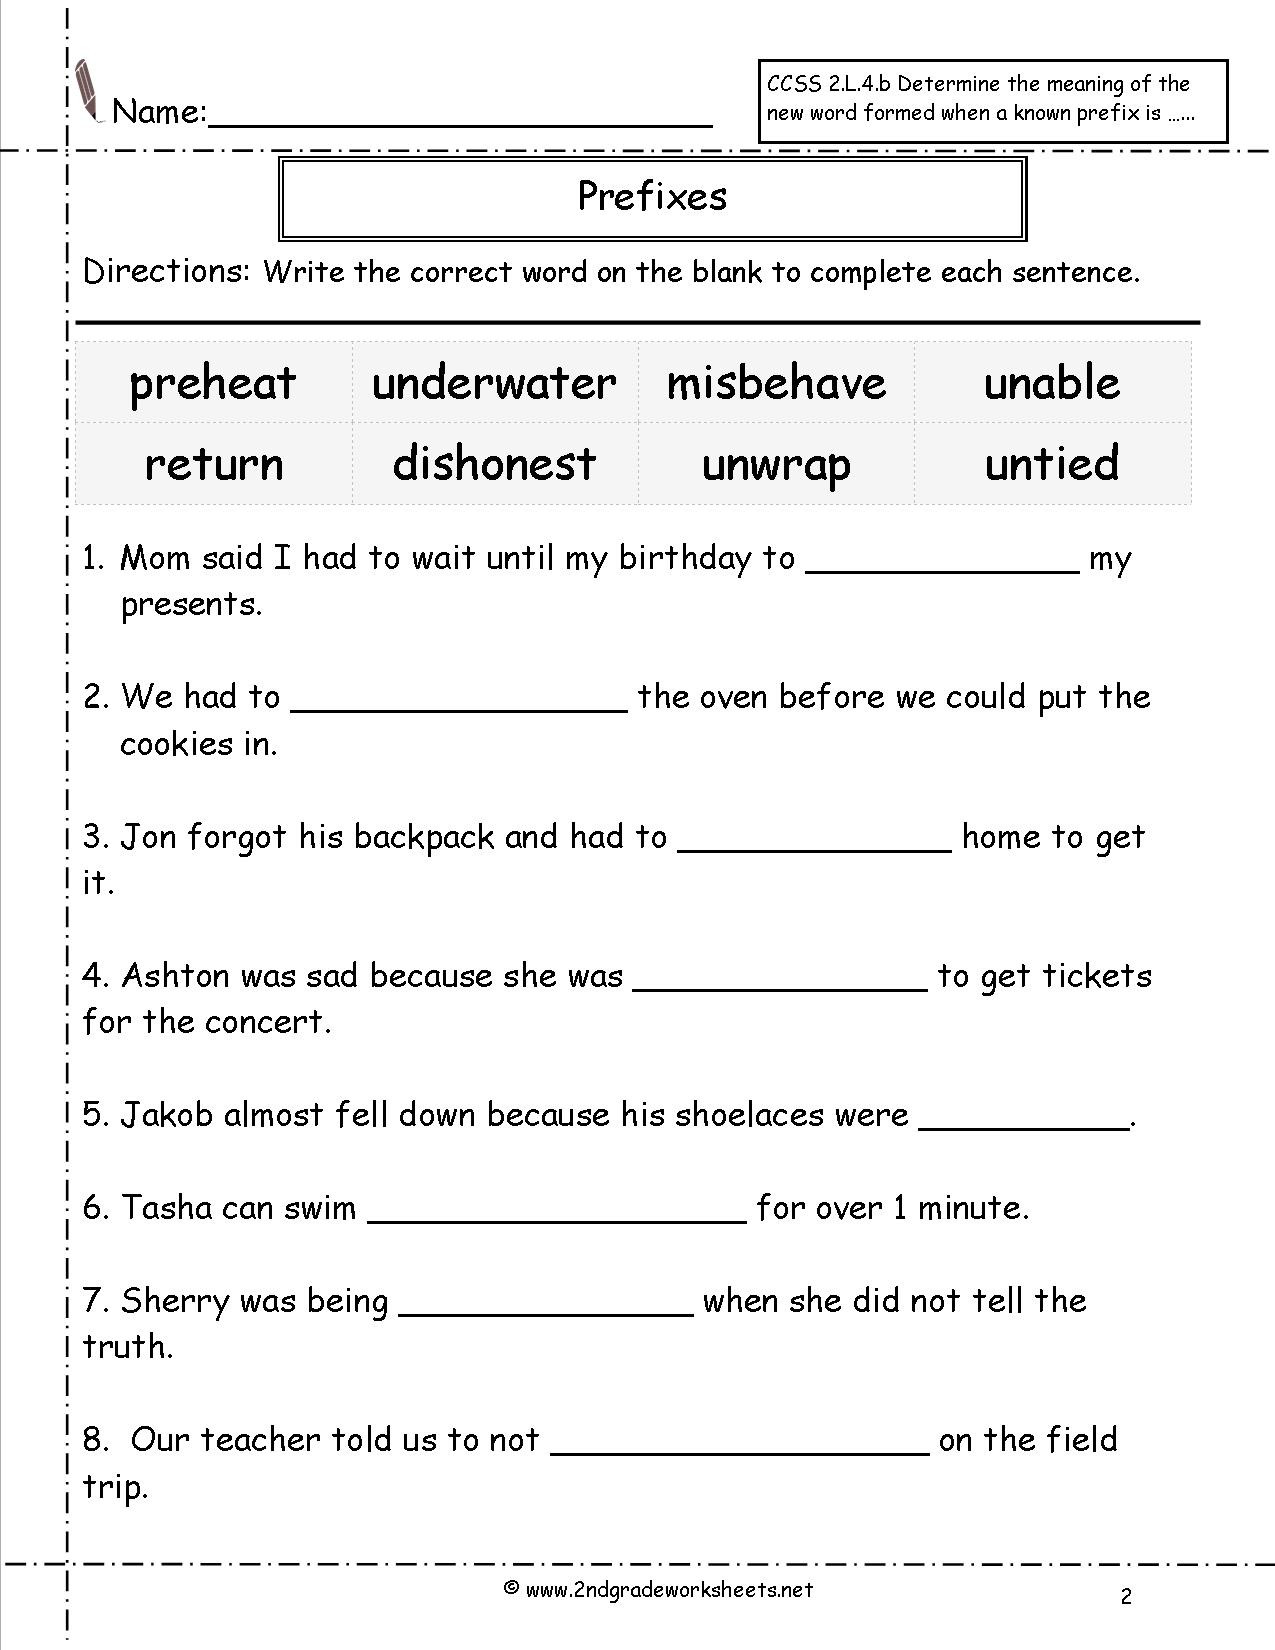 Prefixes Worksheets 3rd Grade Second Grade Prefixes Worksheets Prefix 2nd